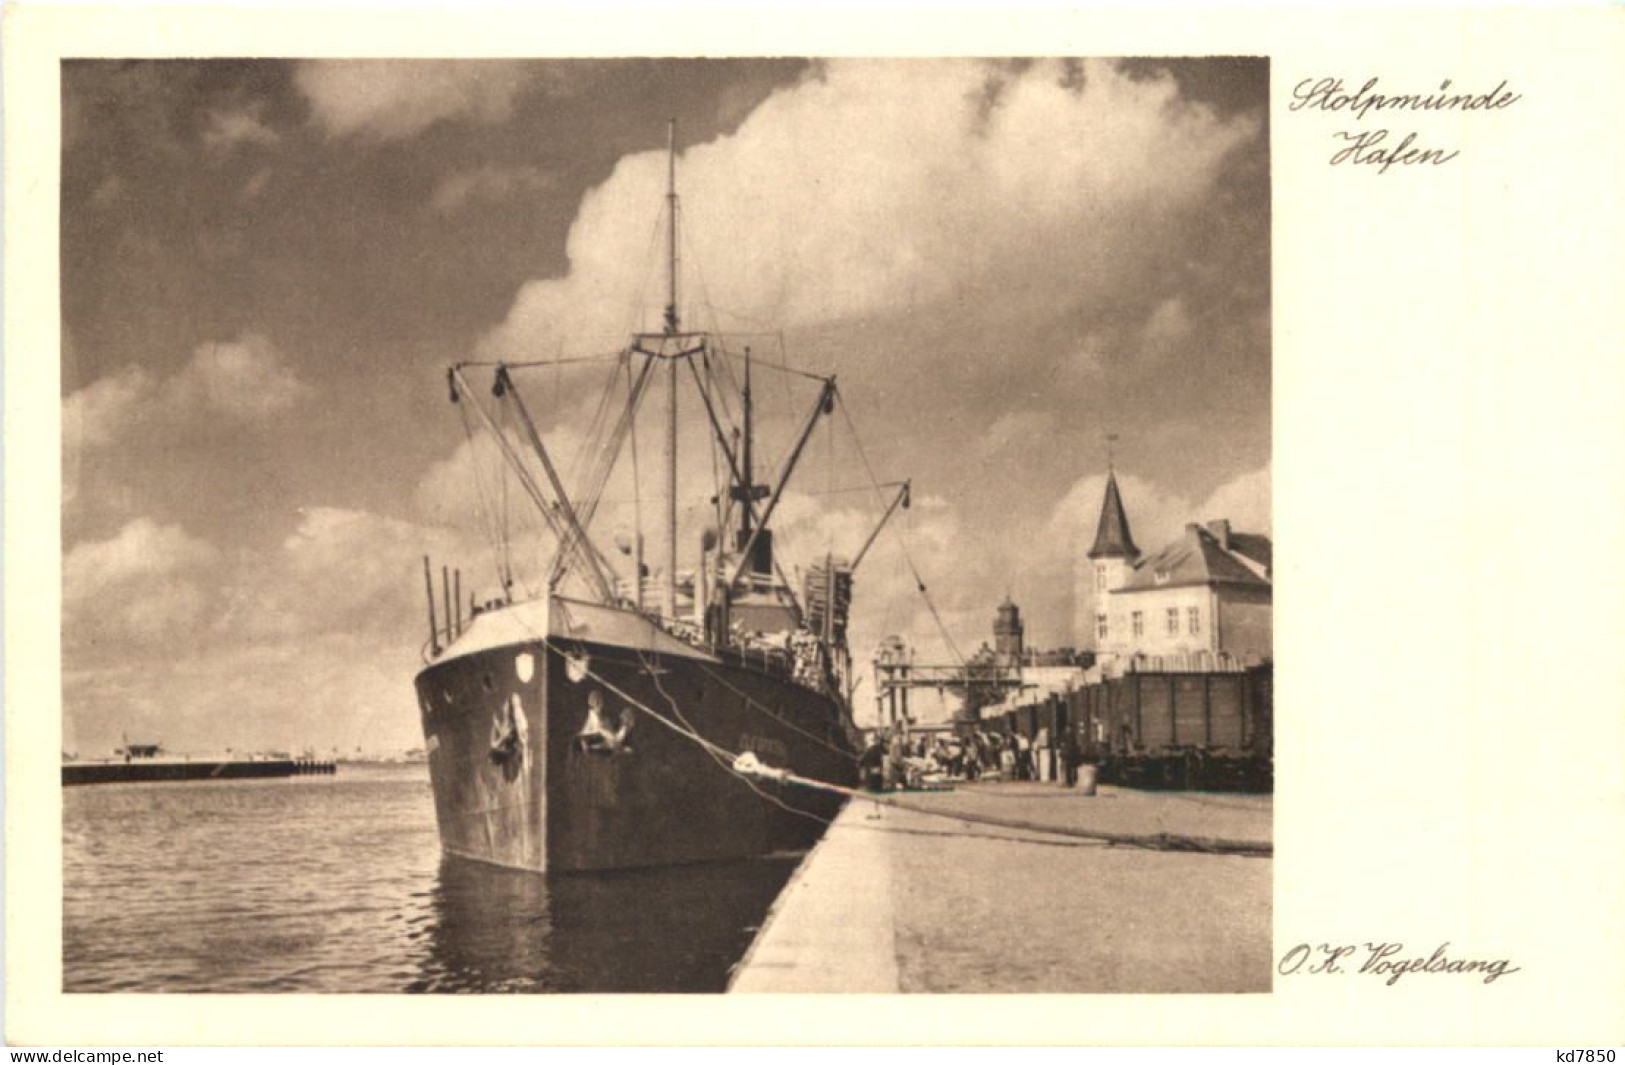 Stolpmünde Hafen - Pommern